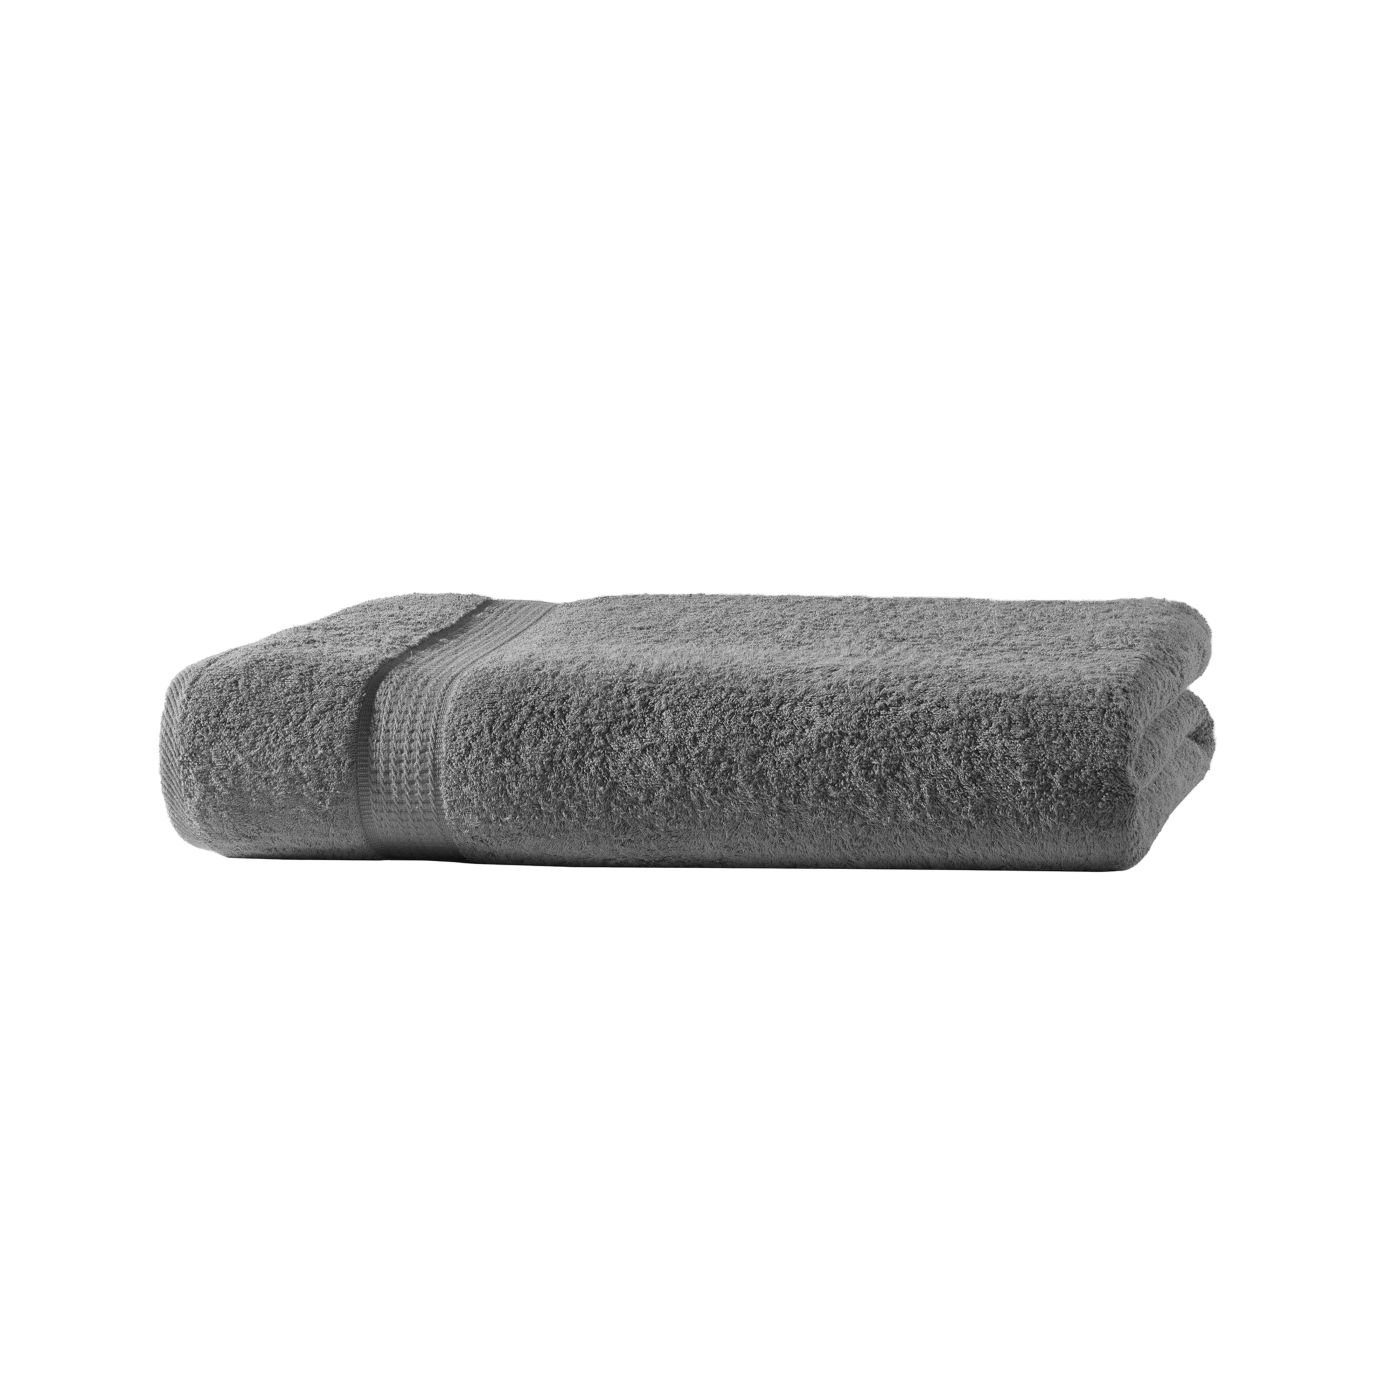 soma Handtuch Frotteeware Uni (1-St) Baumwolle, mit Handtuchset, Baumwolle Bordüre 100% Handtücher